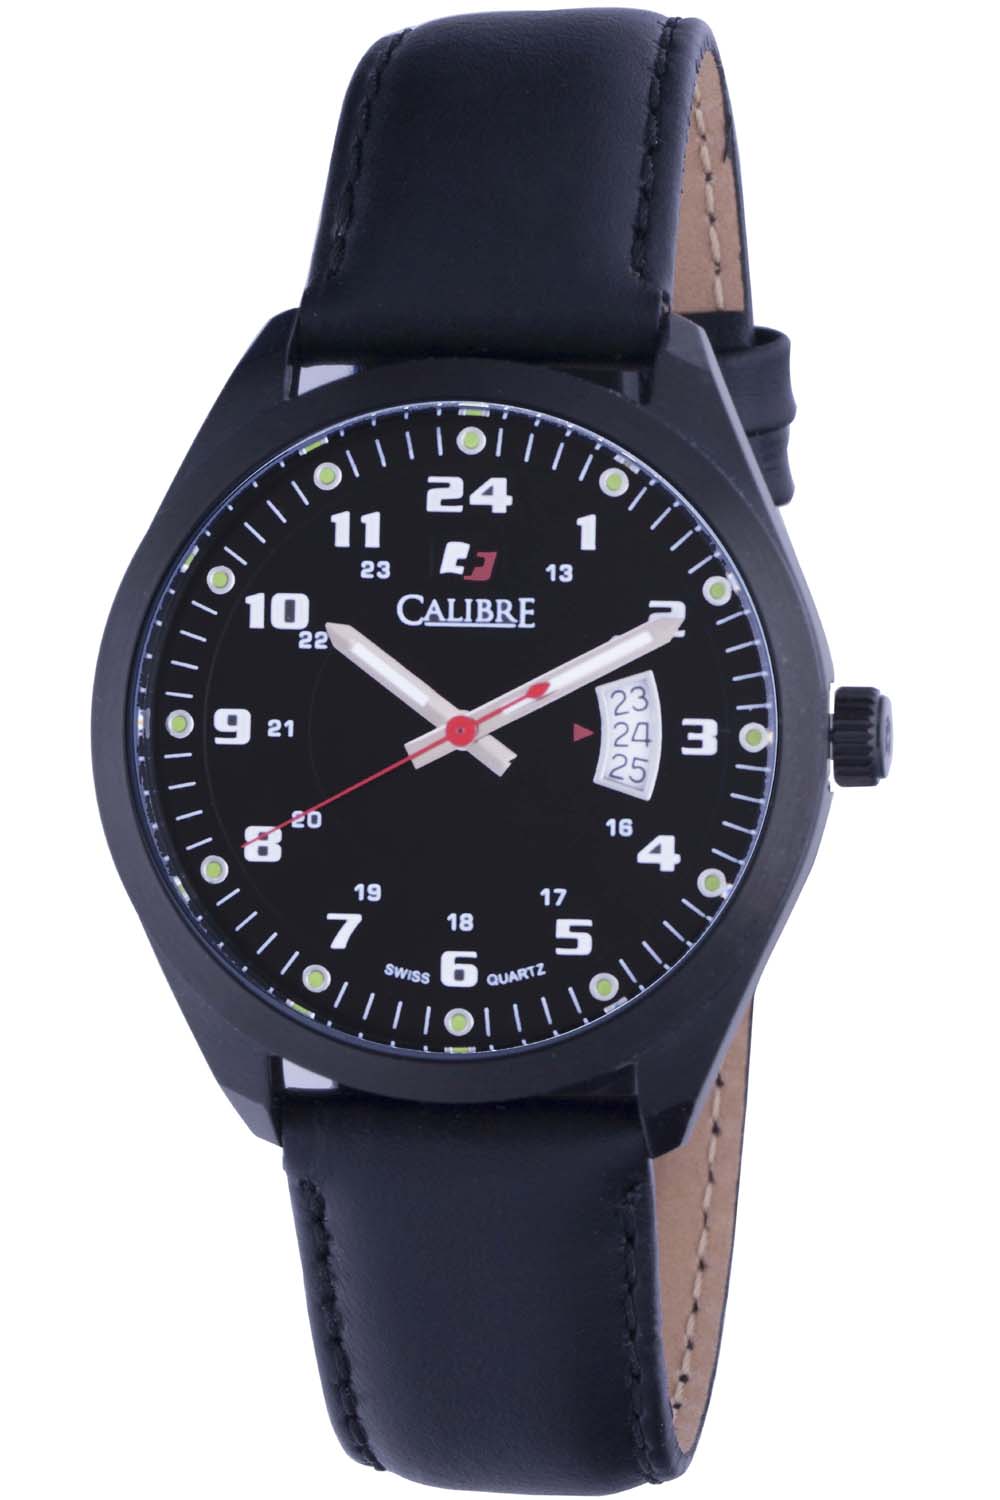 calibre watch